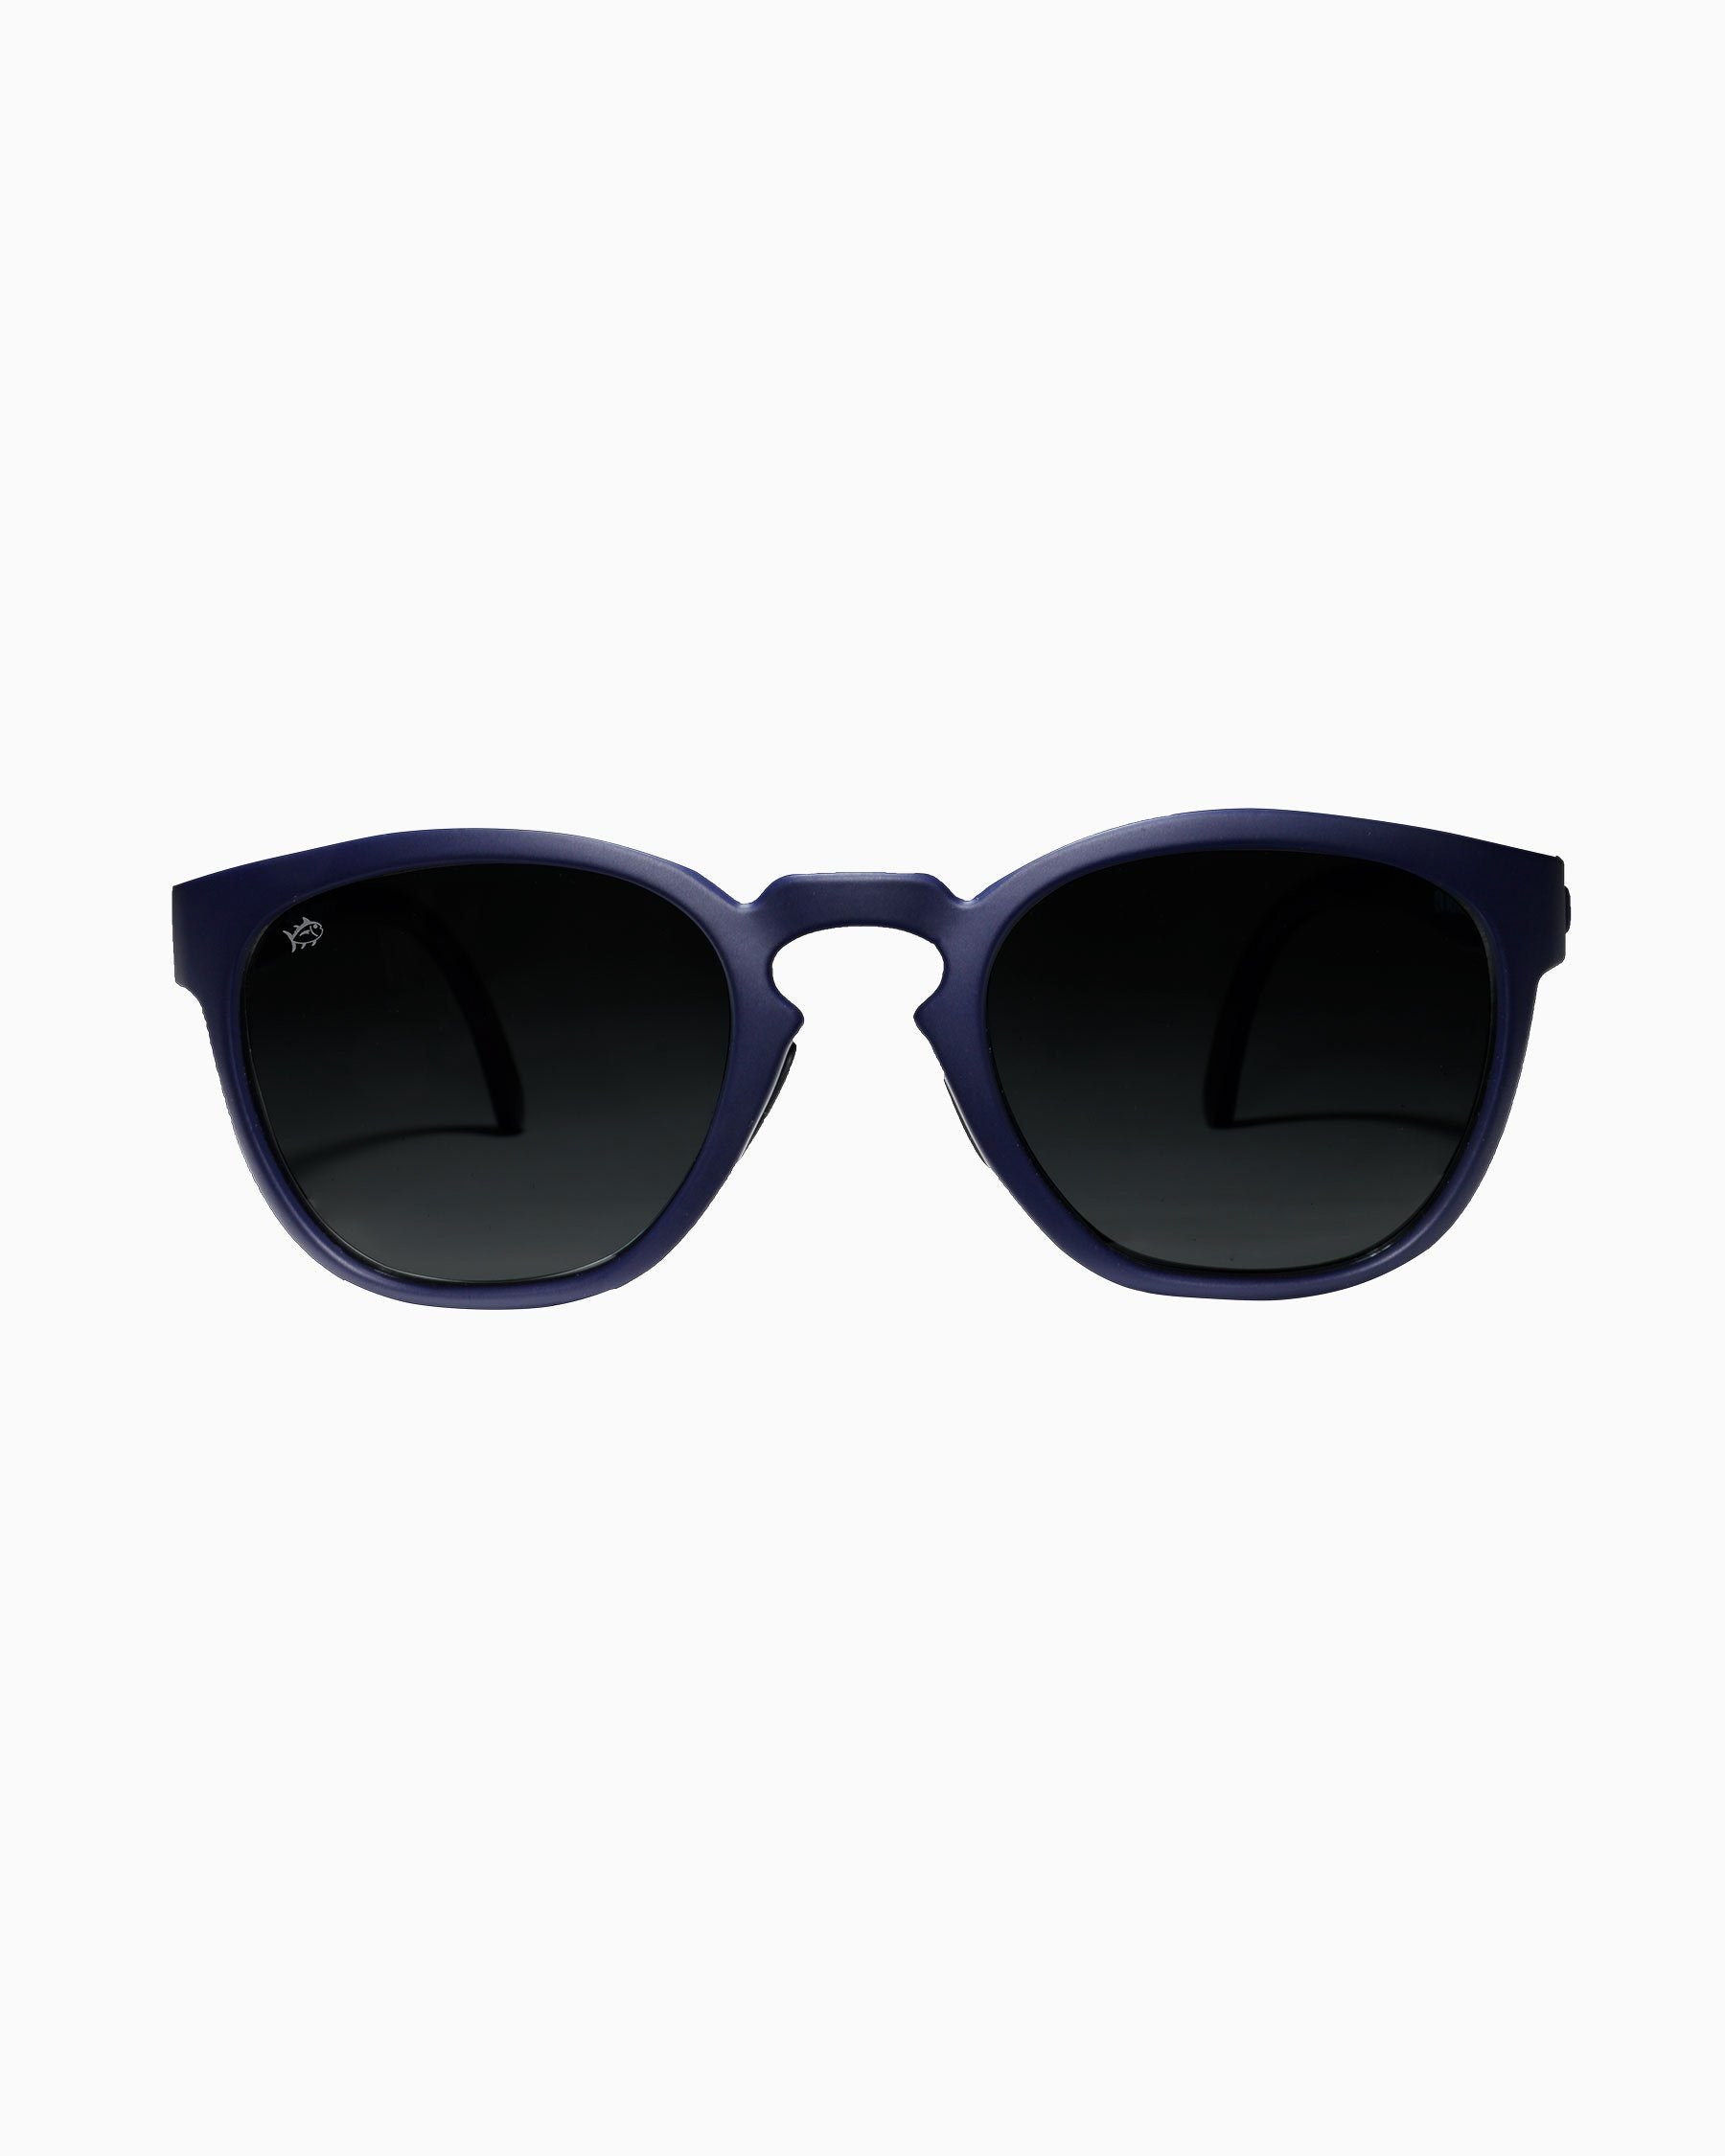 高価値セリー Finally Shak Rheos  Wyecreeks Back - Floating Floating  Polarized Floating Sunglasses -, UV Rheos Protection, The Anti-Glare  Water Sunglasses Sunglasses The Sport Sunglasses